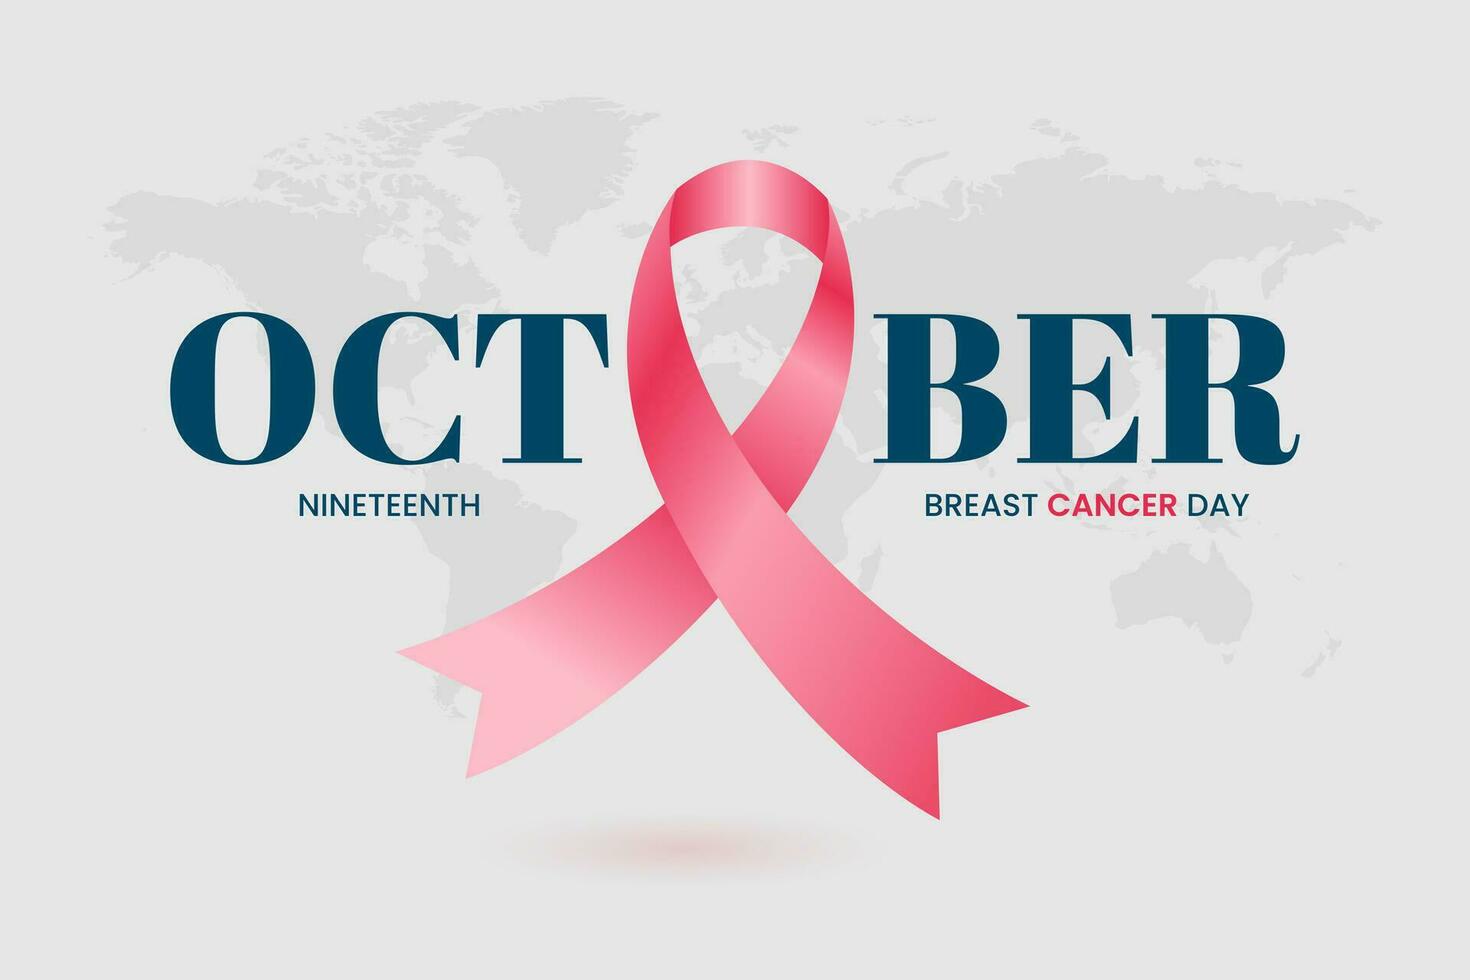 Brust Krebs Tag Oktober 19 .. Banner Design mit Rosa Band und Welt Karte Hintergrund vektor